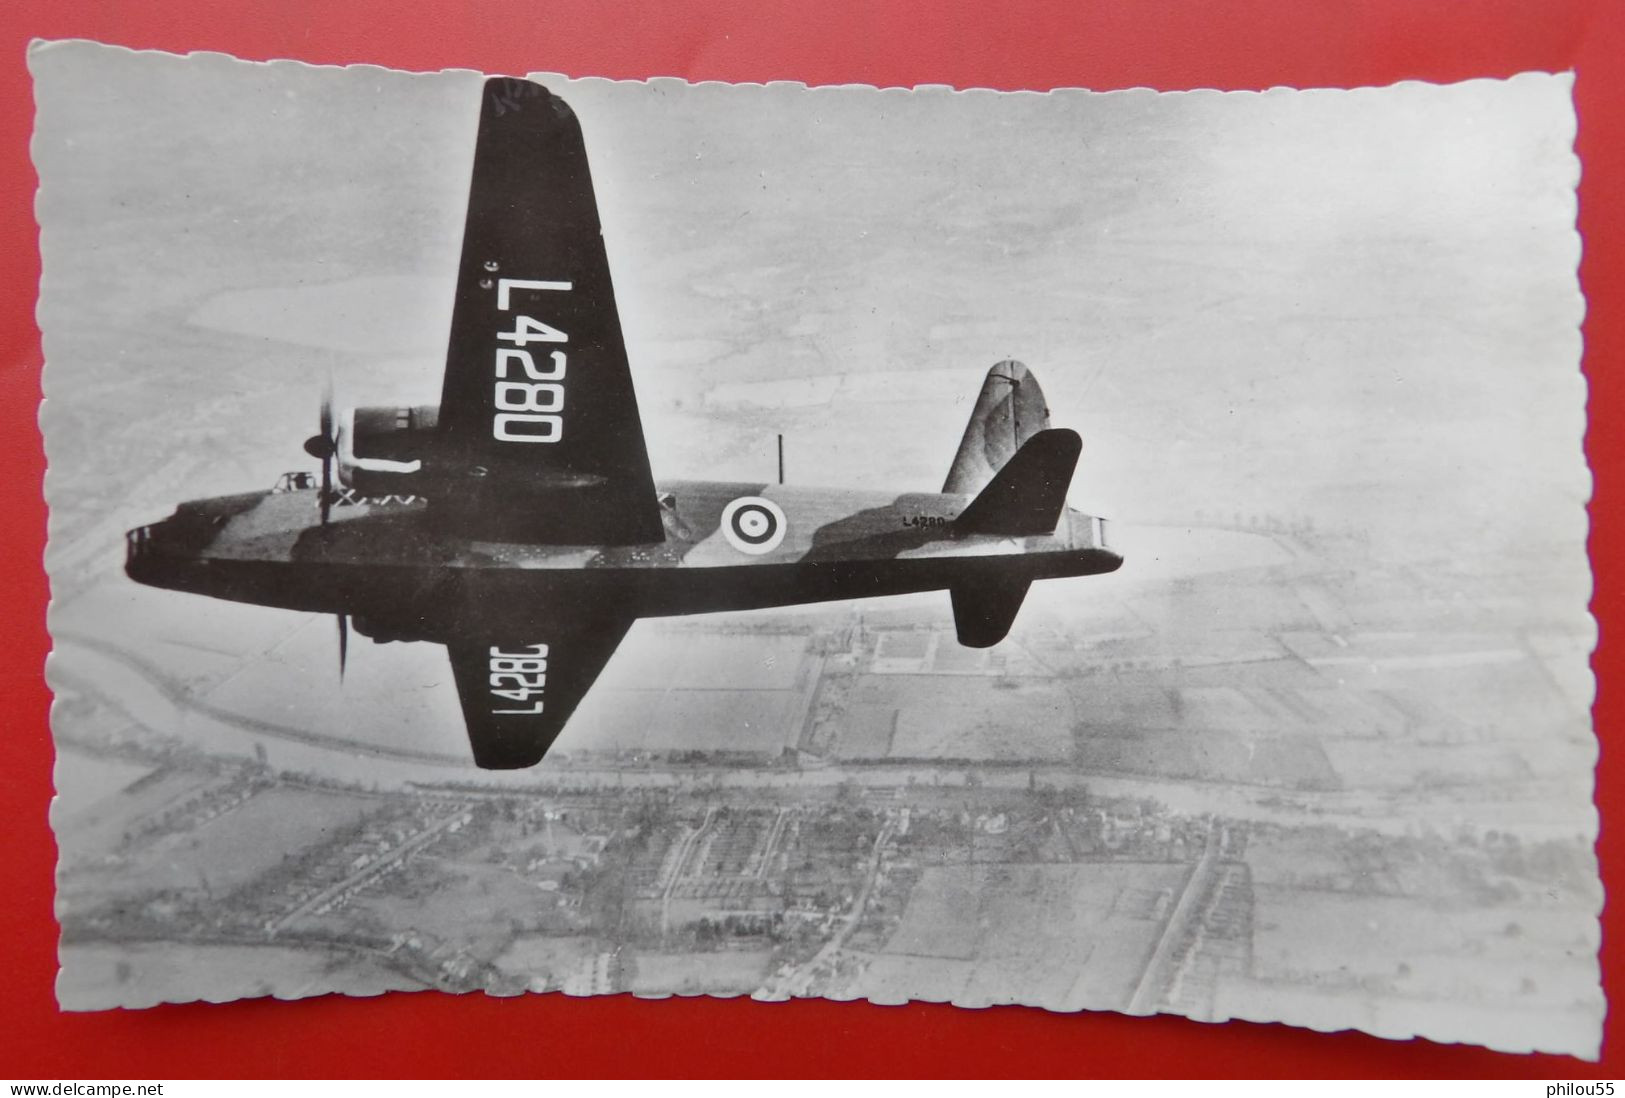 Cpsm Avion RAF - 1939-1945: 2de Wereldoorlog